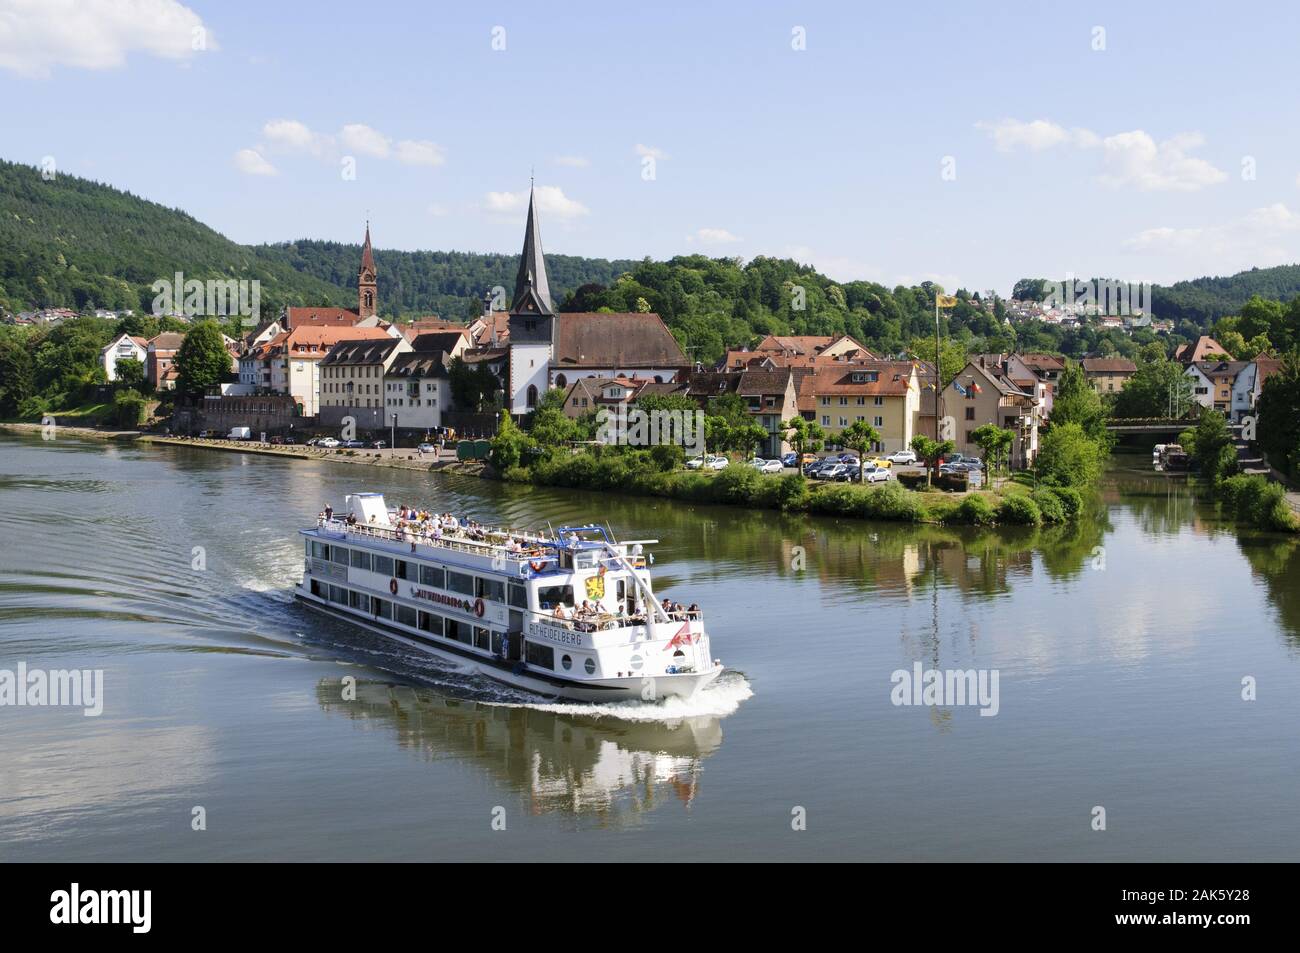 Neckargemuend: Ausflugsschiff auf dem Neckar, Odenwald | usage worldwide Stock Photo